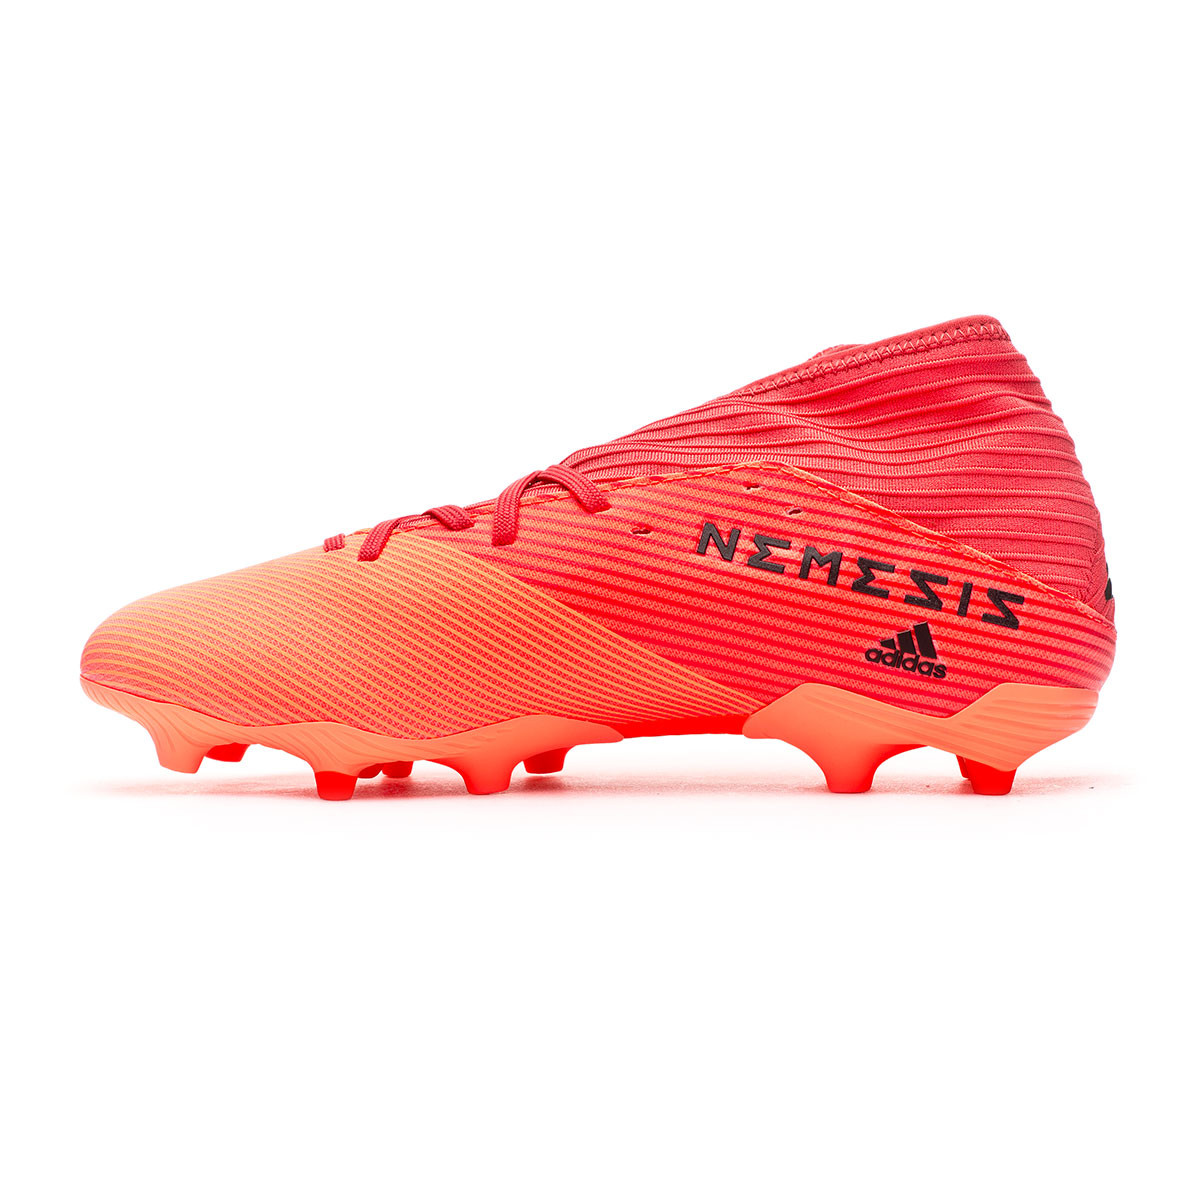 adidas nemeziz 19.3 football boots